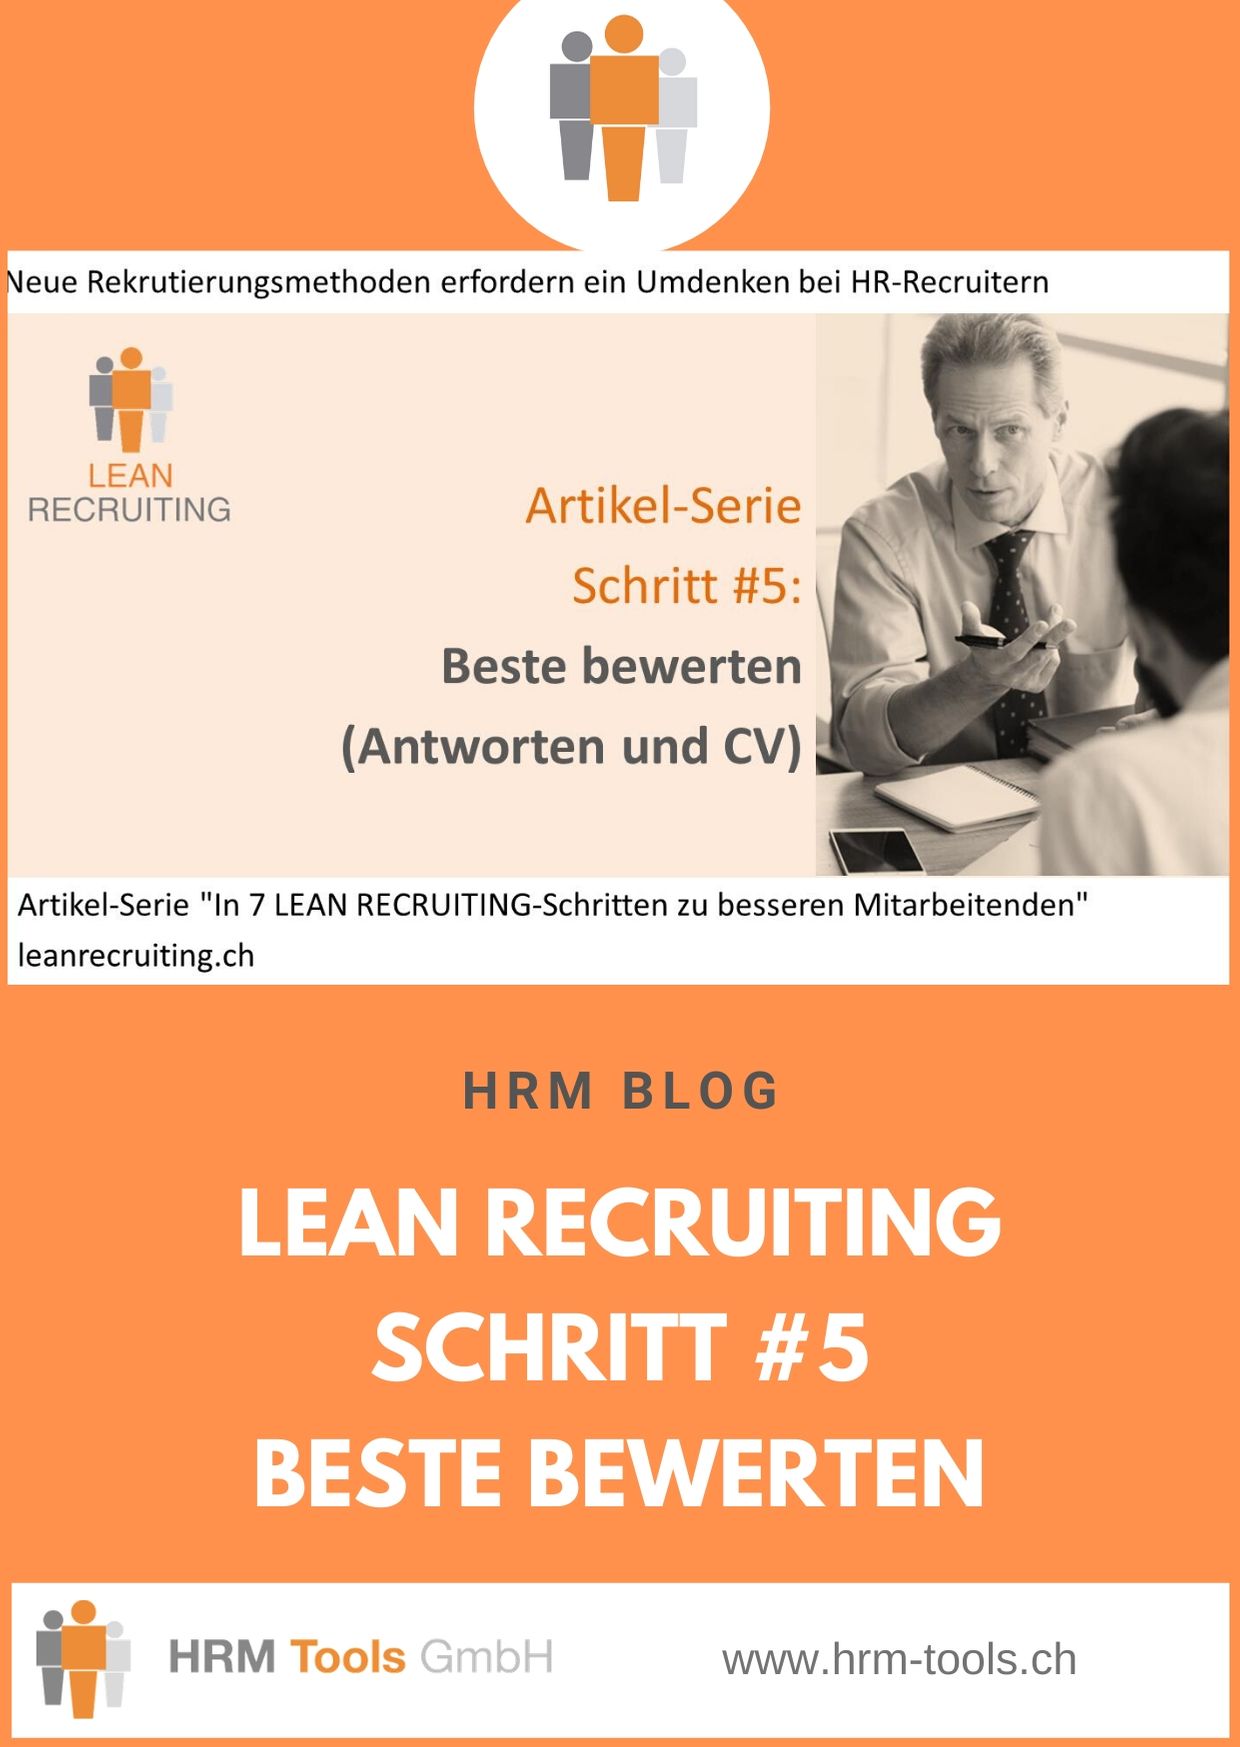 Lean Recruiting Schritt #5 - Die Antworten und CVs der Besten im Ranking vergleichen